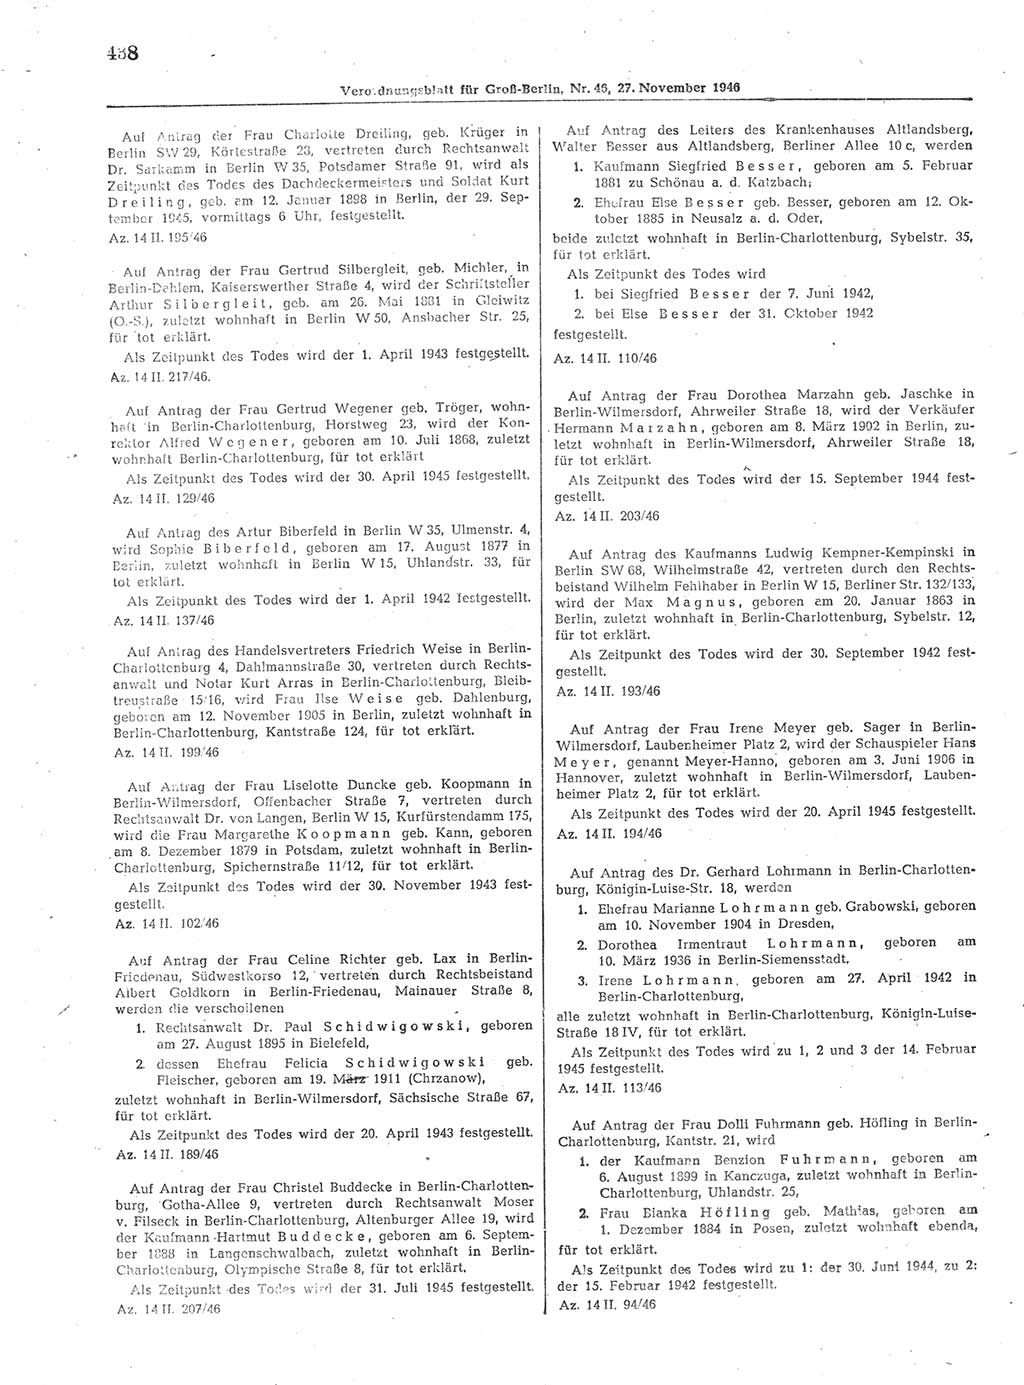 Verordnungsblatt (VOBl.) der Stadt Berlin, für Groß-Berlin 1946, Seite 438 (VOBl. Bln. 1946, S. 438)